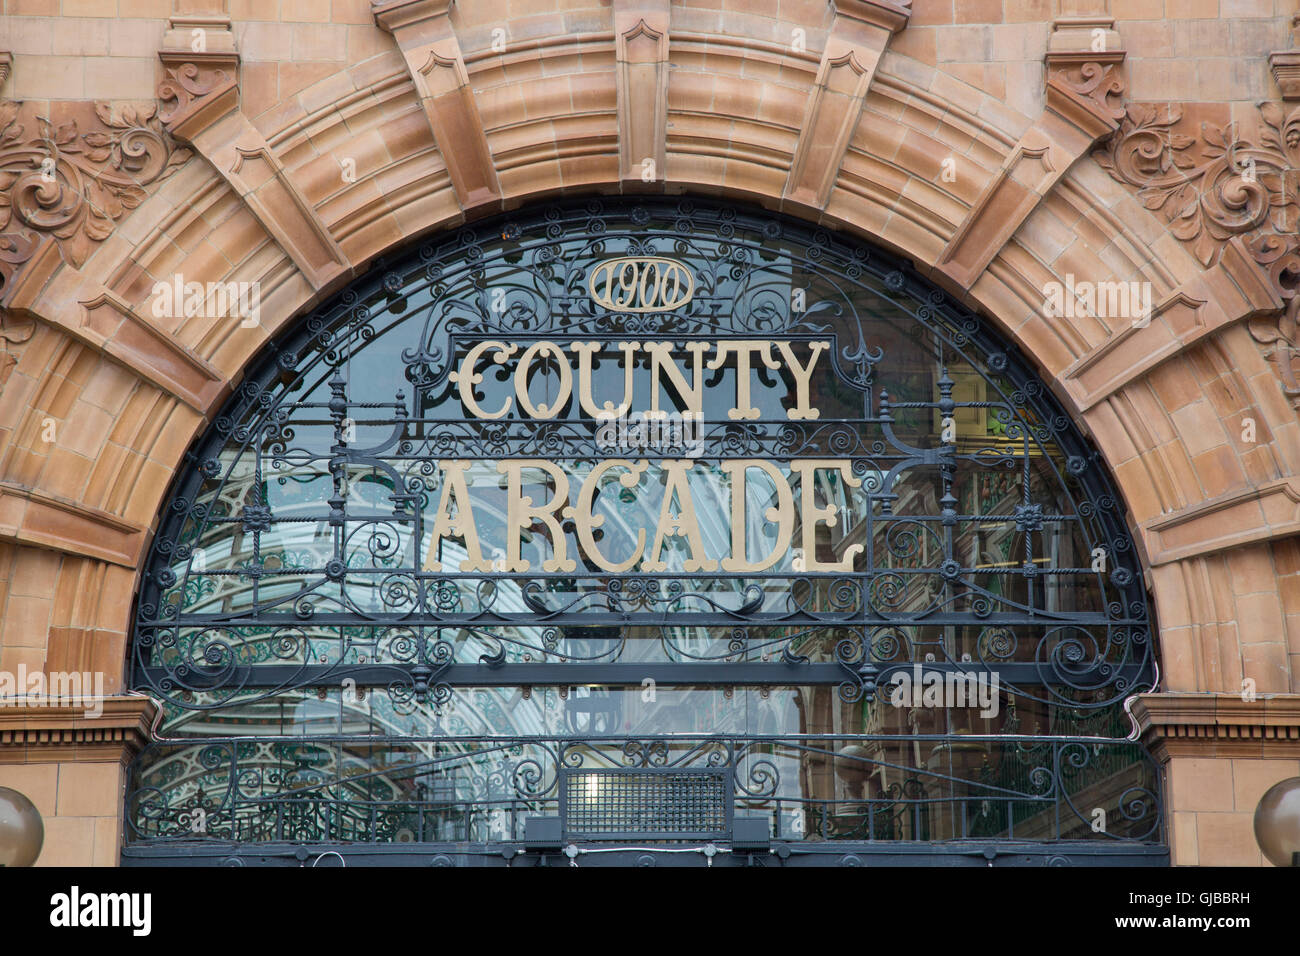 Arcade, comté de Victoria Quarter, Leeds, Yorkshire, Angleterre, Royaume-Uni Banque D'Images